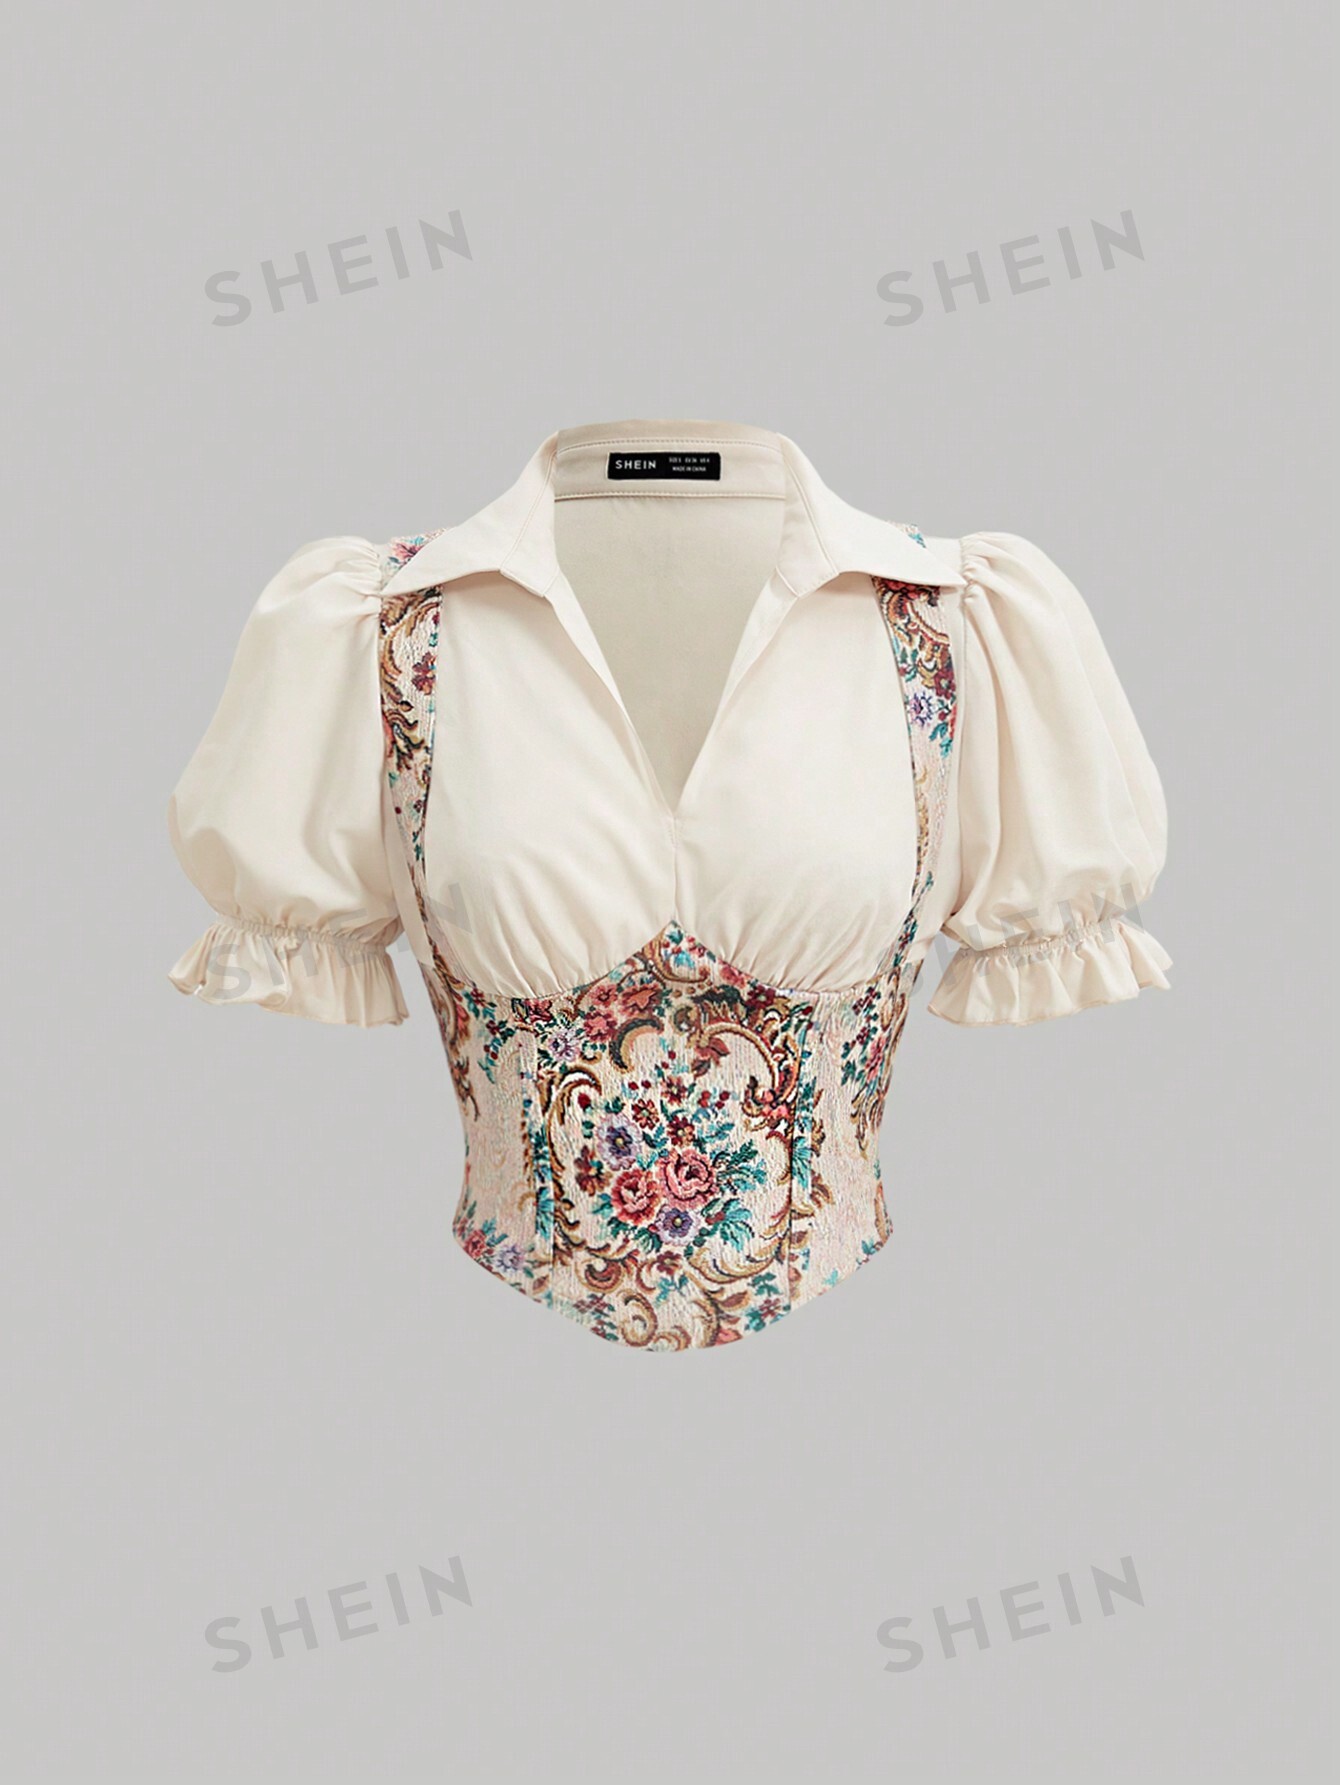 SHEIN MOD Лоскутная рубашка 2 в 1 с объемными рукавами и принтом в стиле суда, многоцветный